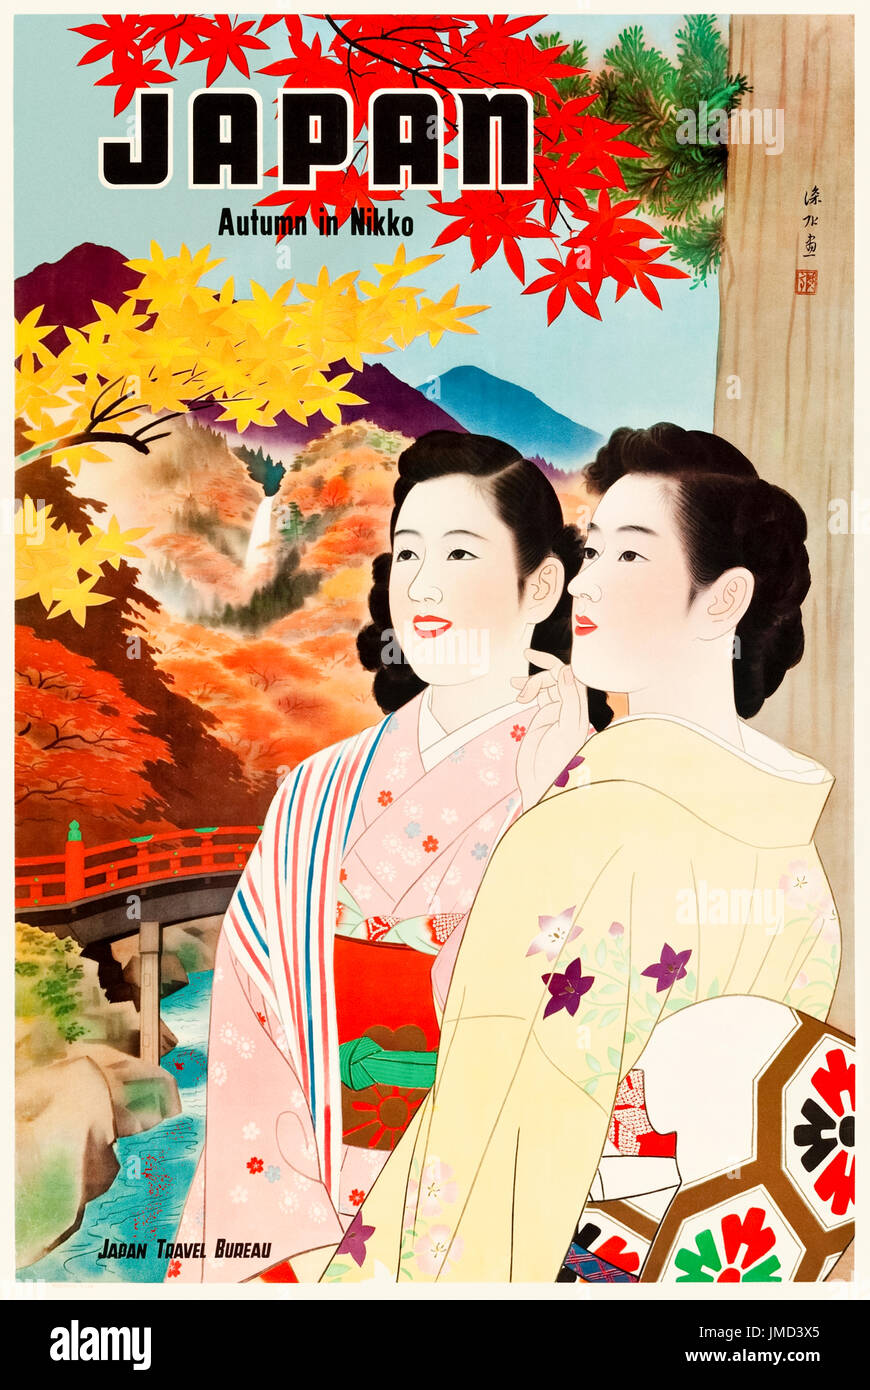 "Japón en otoño en Nikko' Póster de Turismo del Gobierno publicado por el Japan Travel Bureau en 1950 con damas en kimonos con las cataratas Kegon en el fondo. Foto de stock